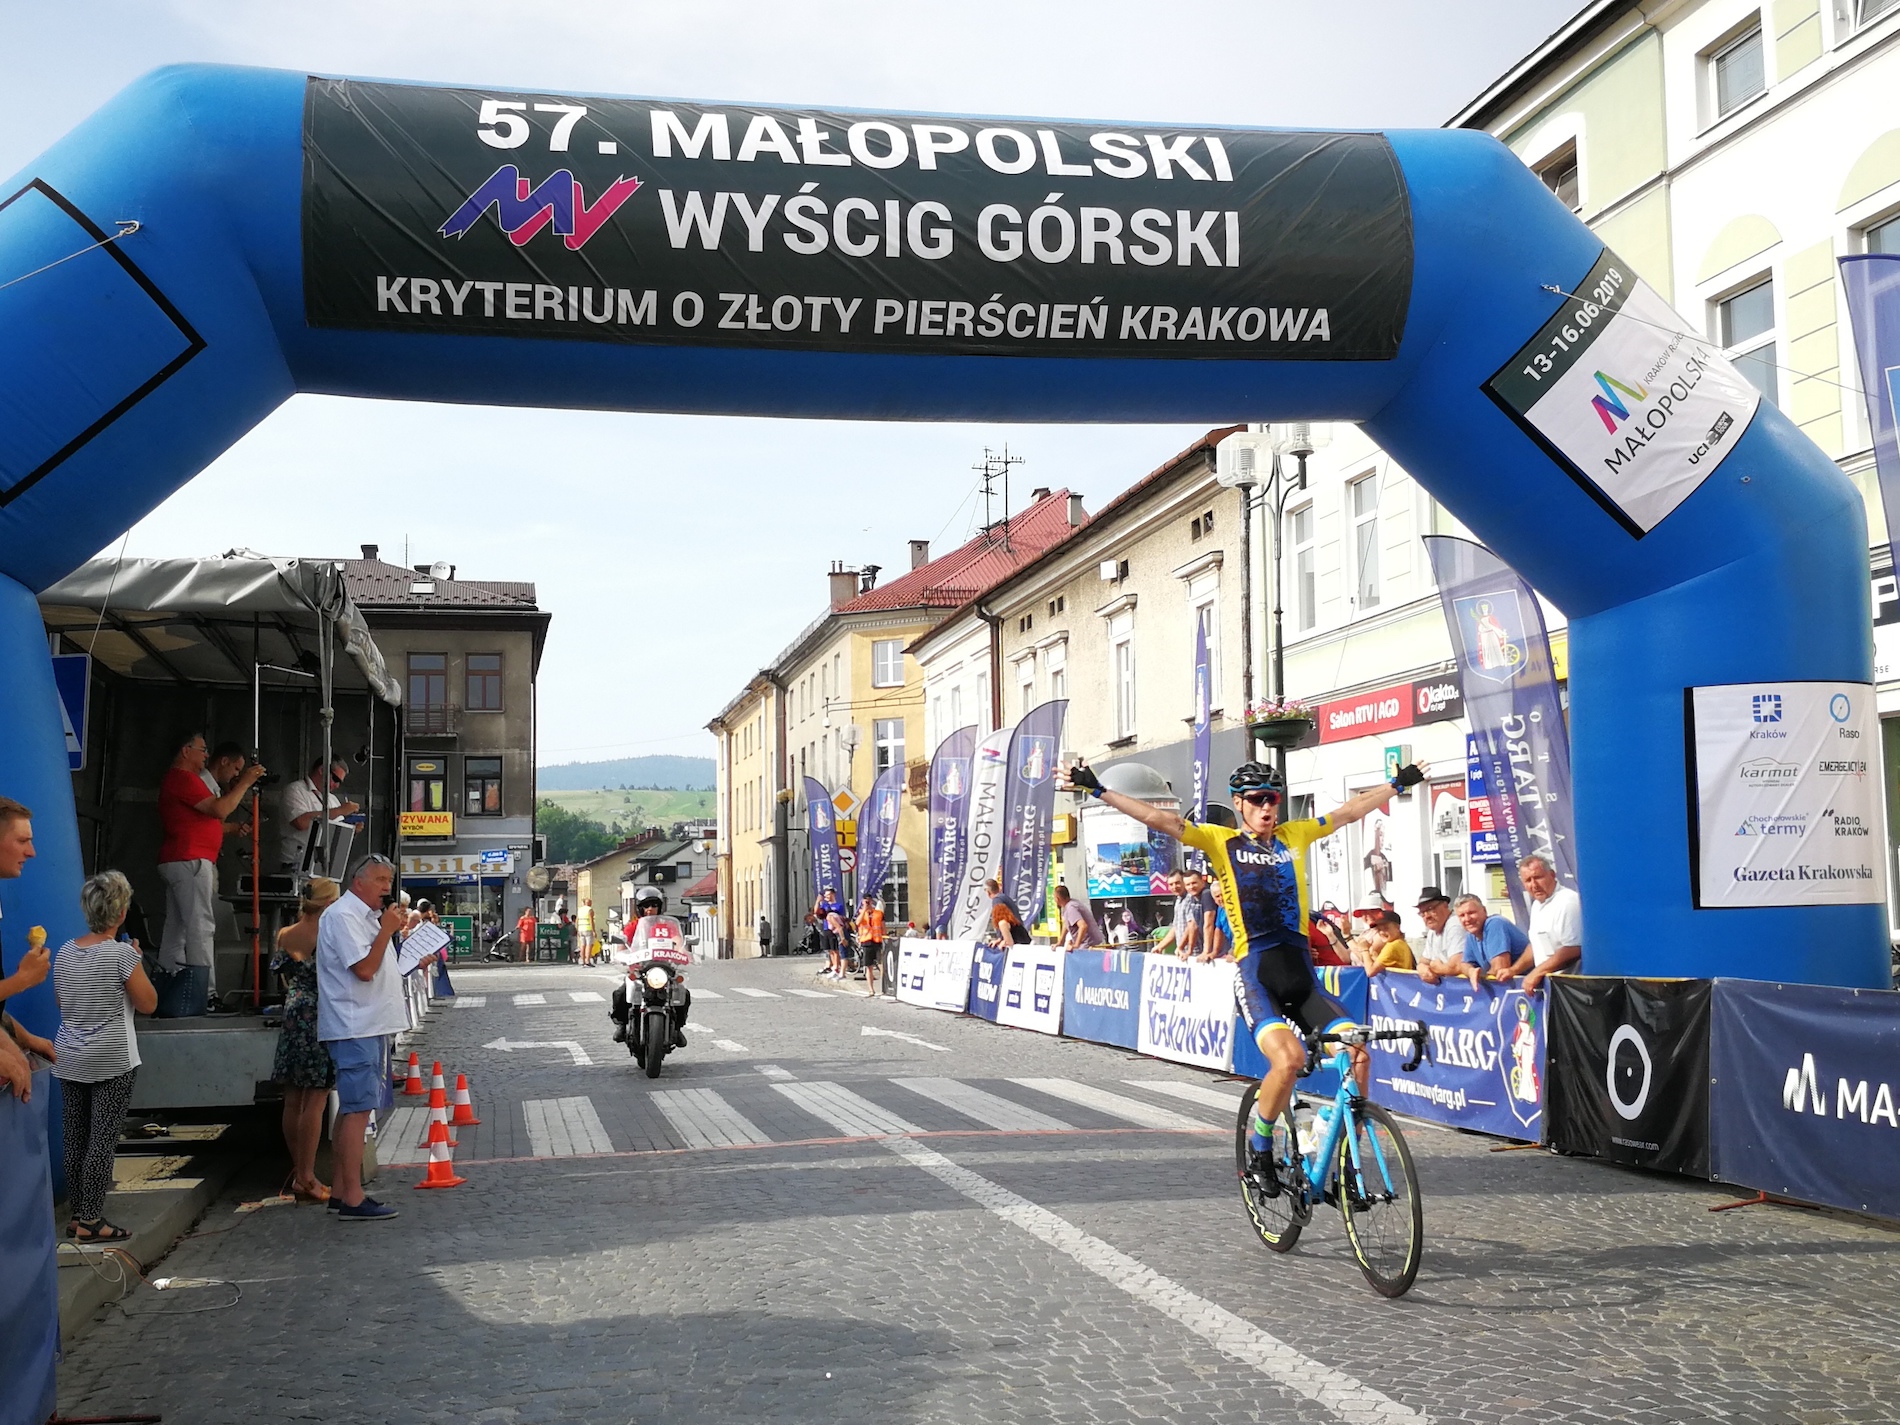 Małopolski Wyścig Górski 2019: etap 2. Holovash wygrywa po solowej akcji